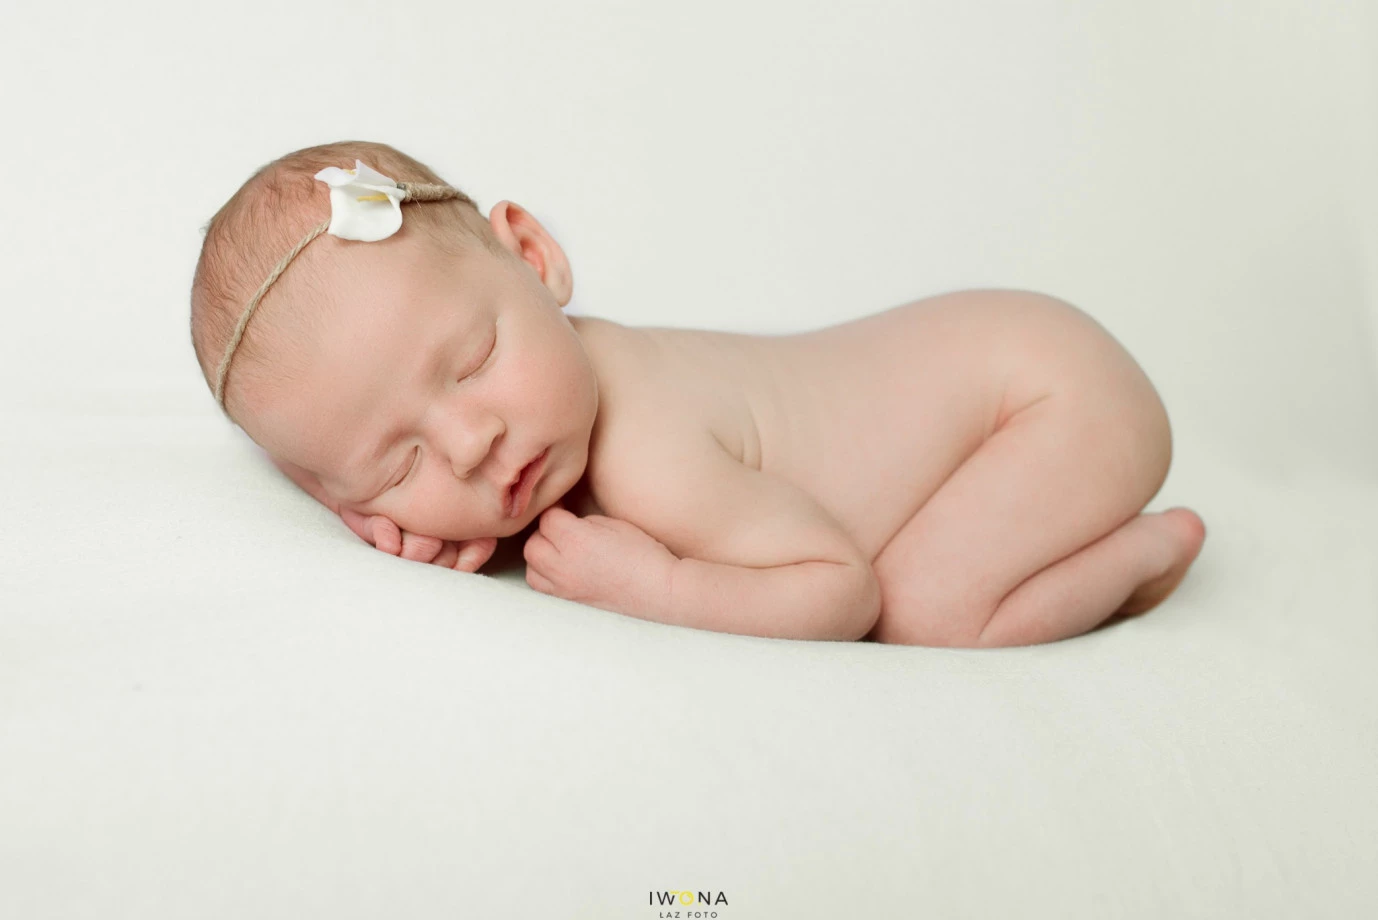 zdjęcia borki-nizinskie fotograf iwona-laz-foto portfolio zdjecia noworodkow sesje noworodkowe niemowlę